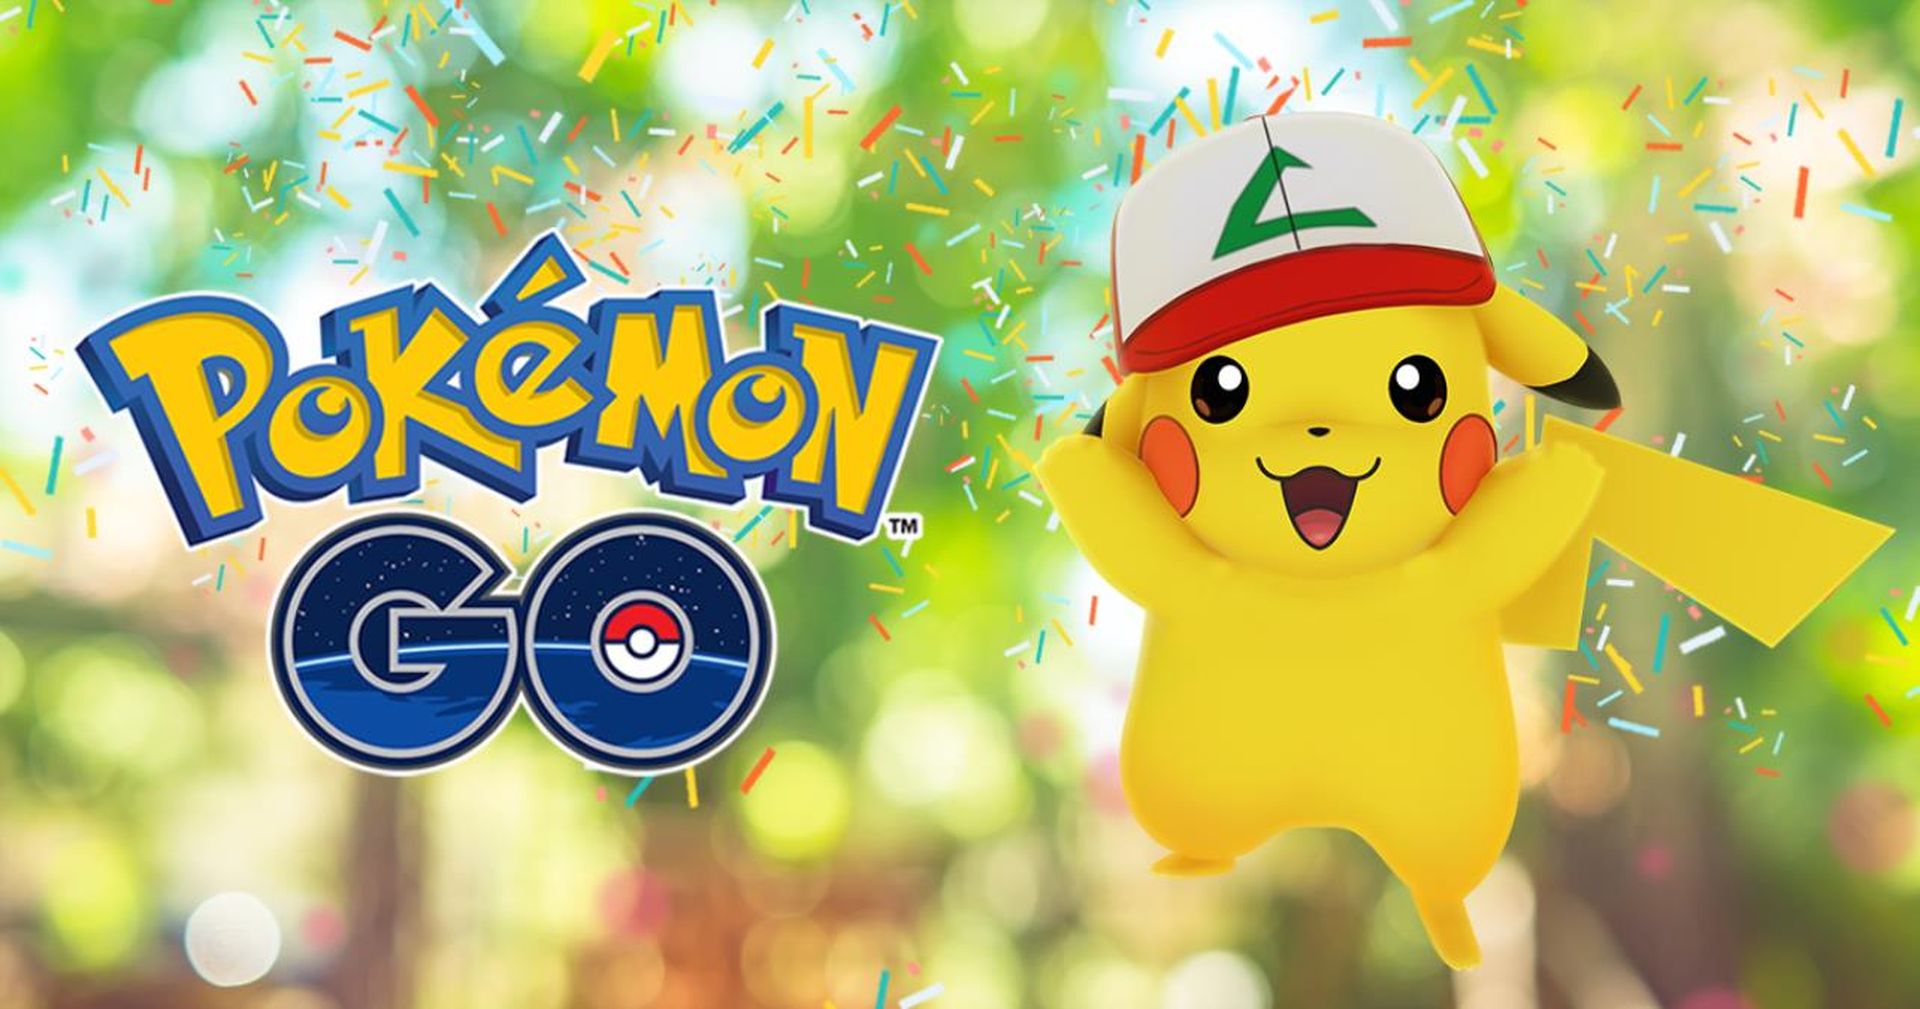 Choose a path Pokémon GO Fest 2022: Catch, Battle or Explore?